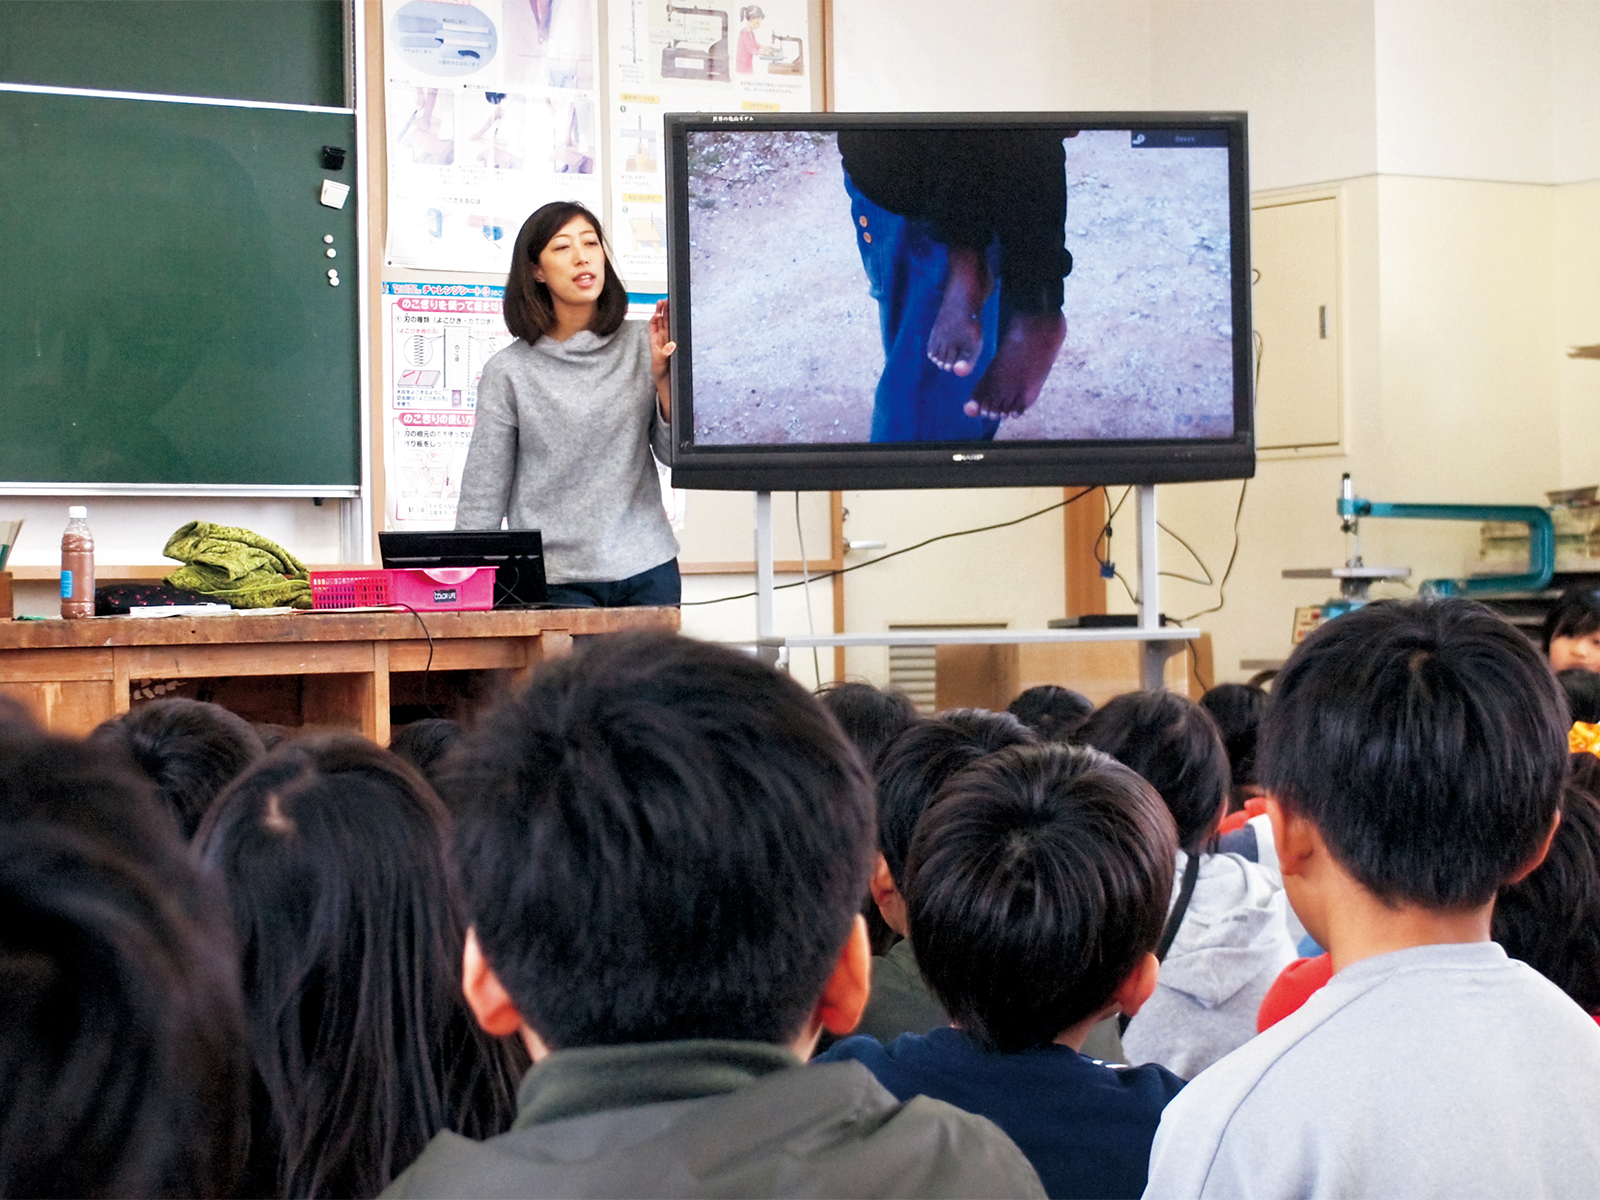 千葉市立大森小学校で行われた、「スマイル アフリカ プロジェクト」製作の映像資料を使った環境授業。